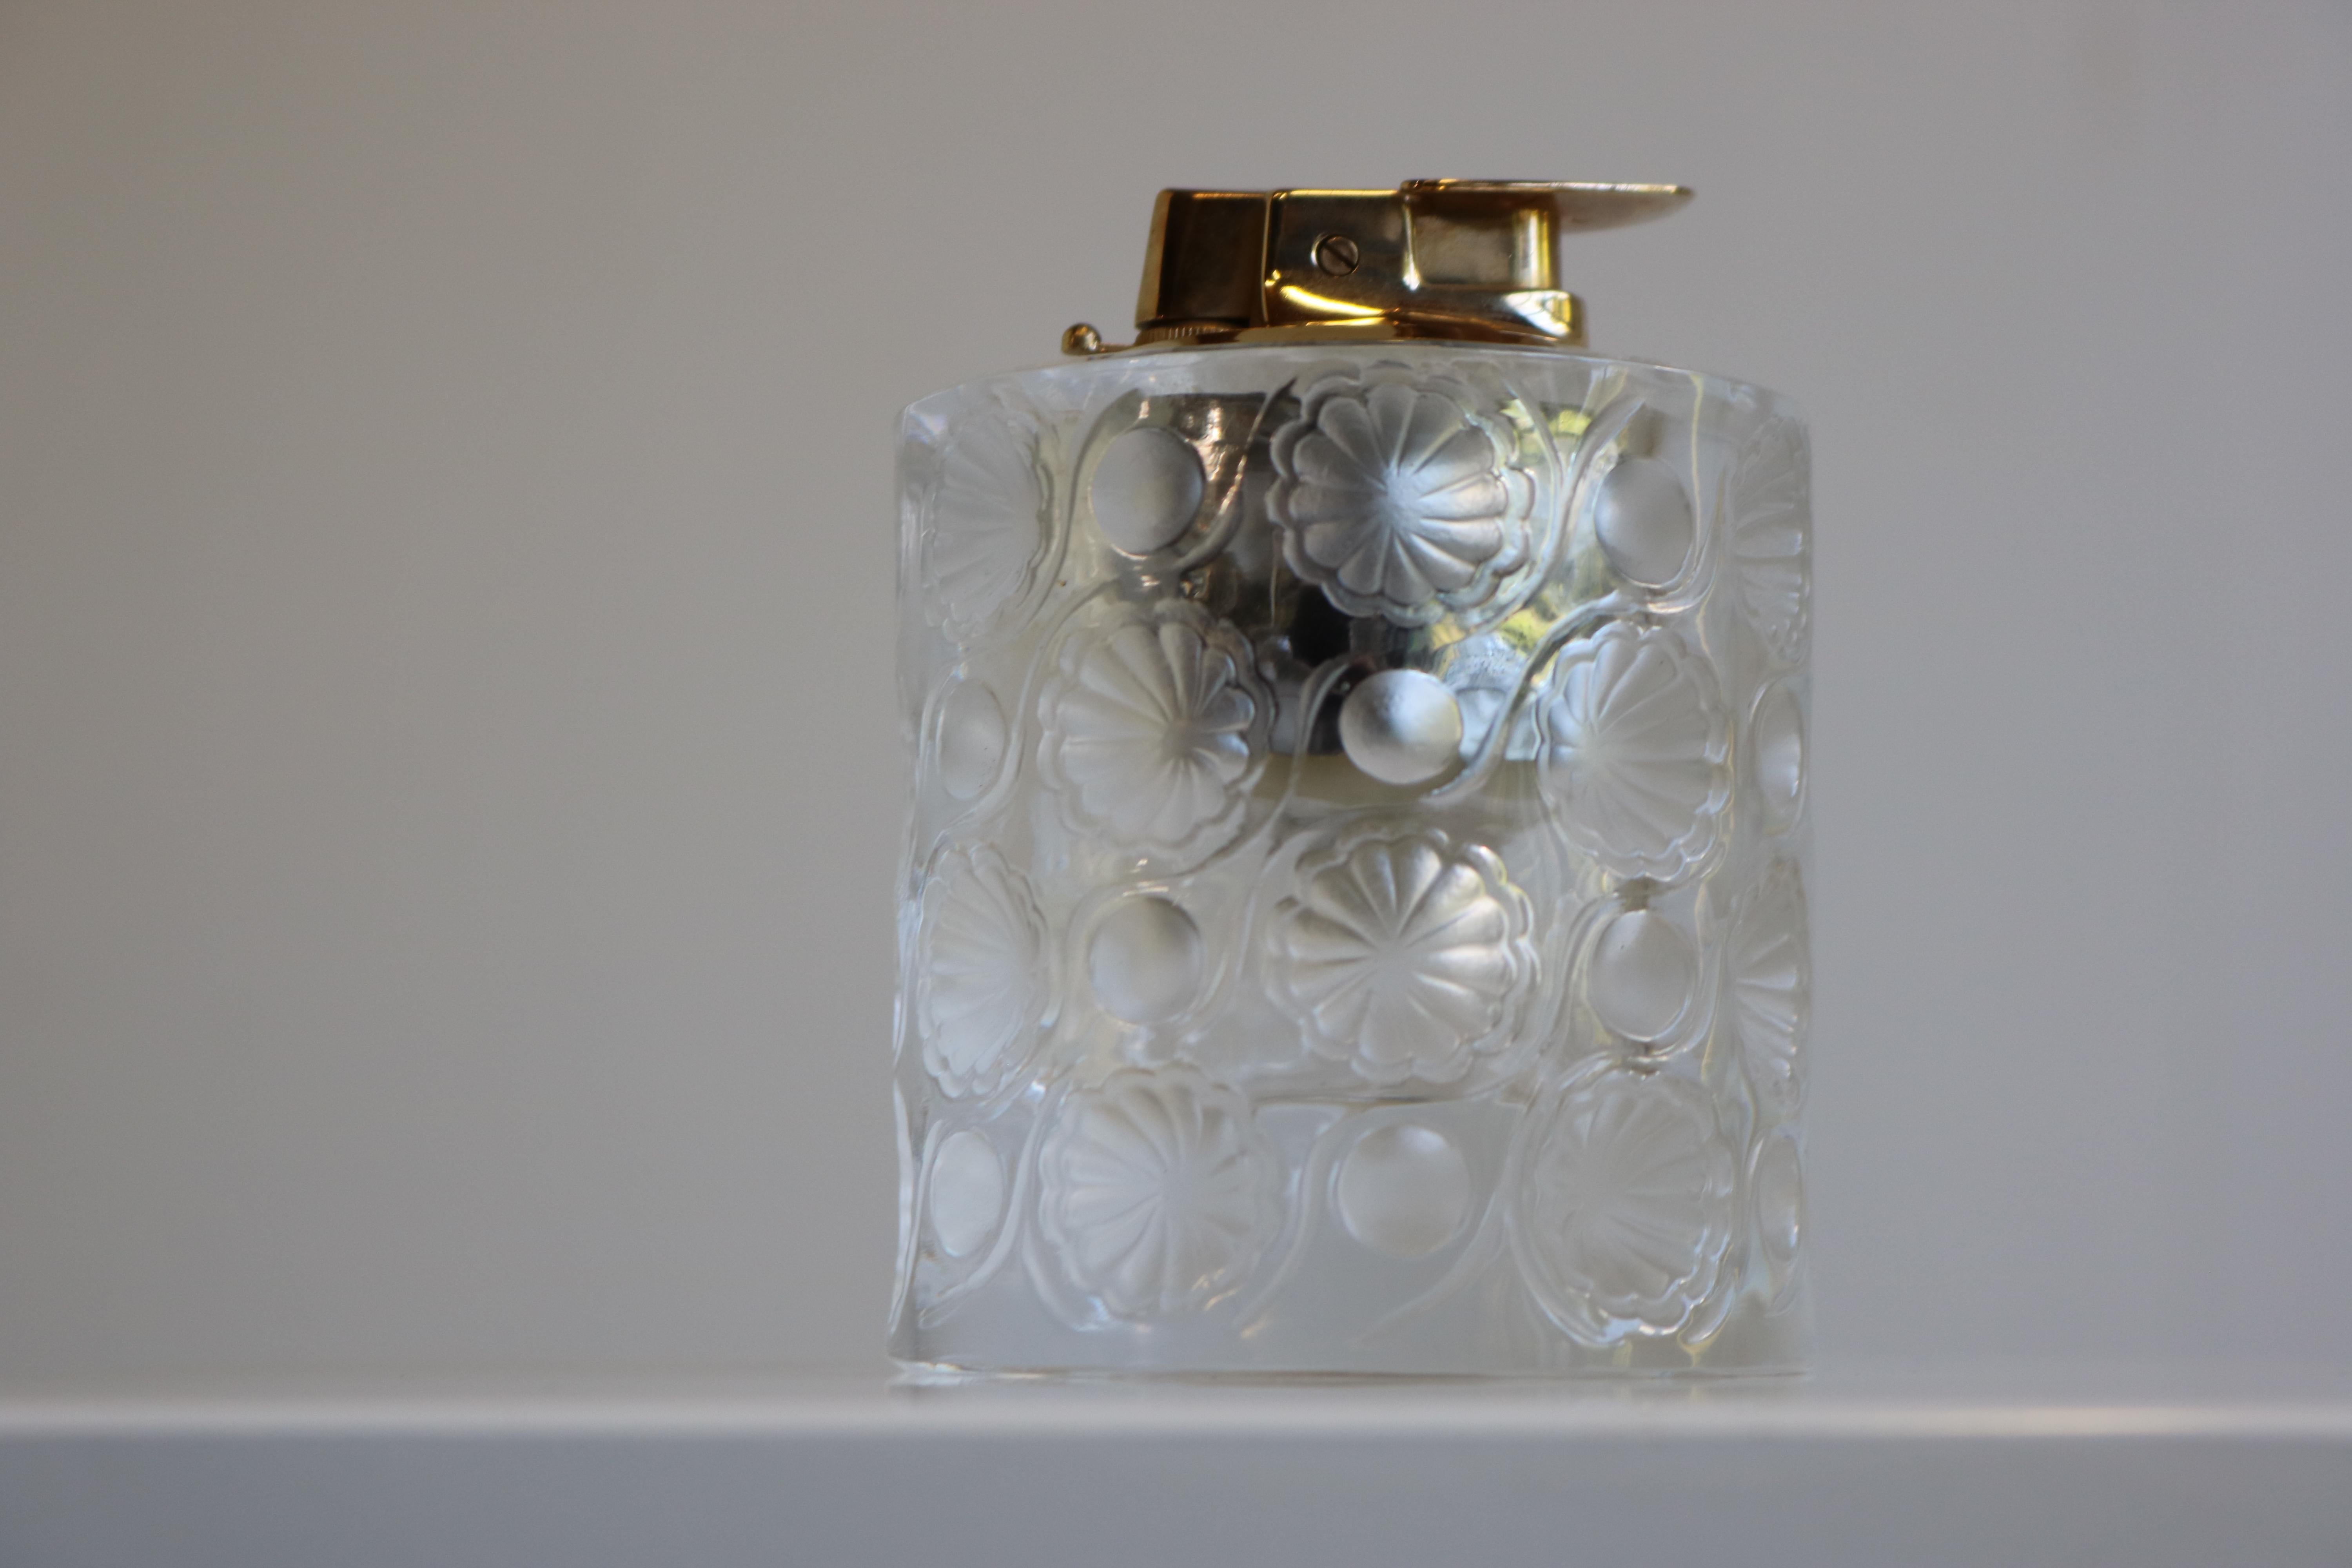 Wenn es darum geht, Eleganz und Wohlstand als Lebensstil zu definieren, kommt den meisten Menschen Lalique Kristall in den Sinn. Von den Anfängen bis heute hat das Unternehmen Lalique die Welt mit seinen exquisiten Glas- und Kristalldarstellungen